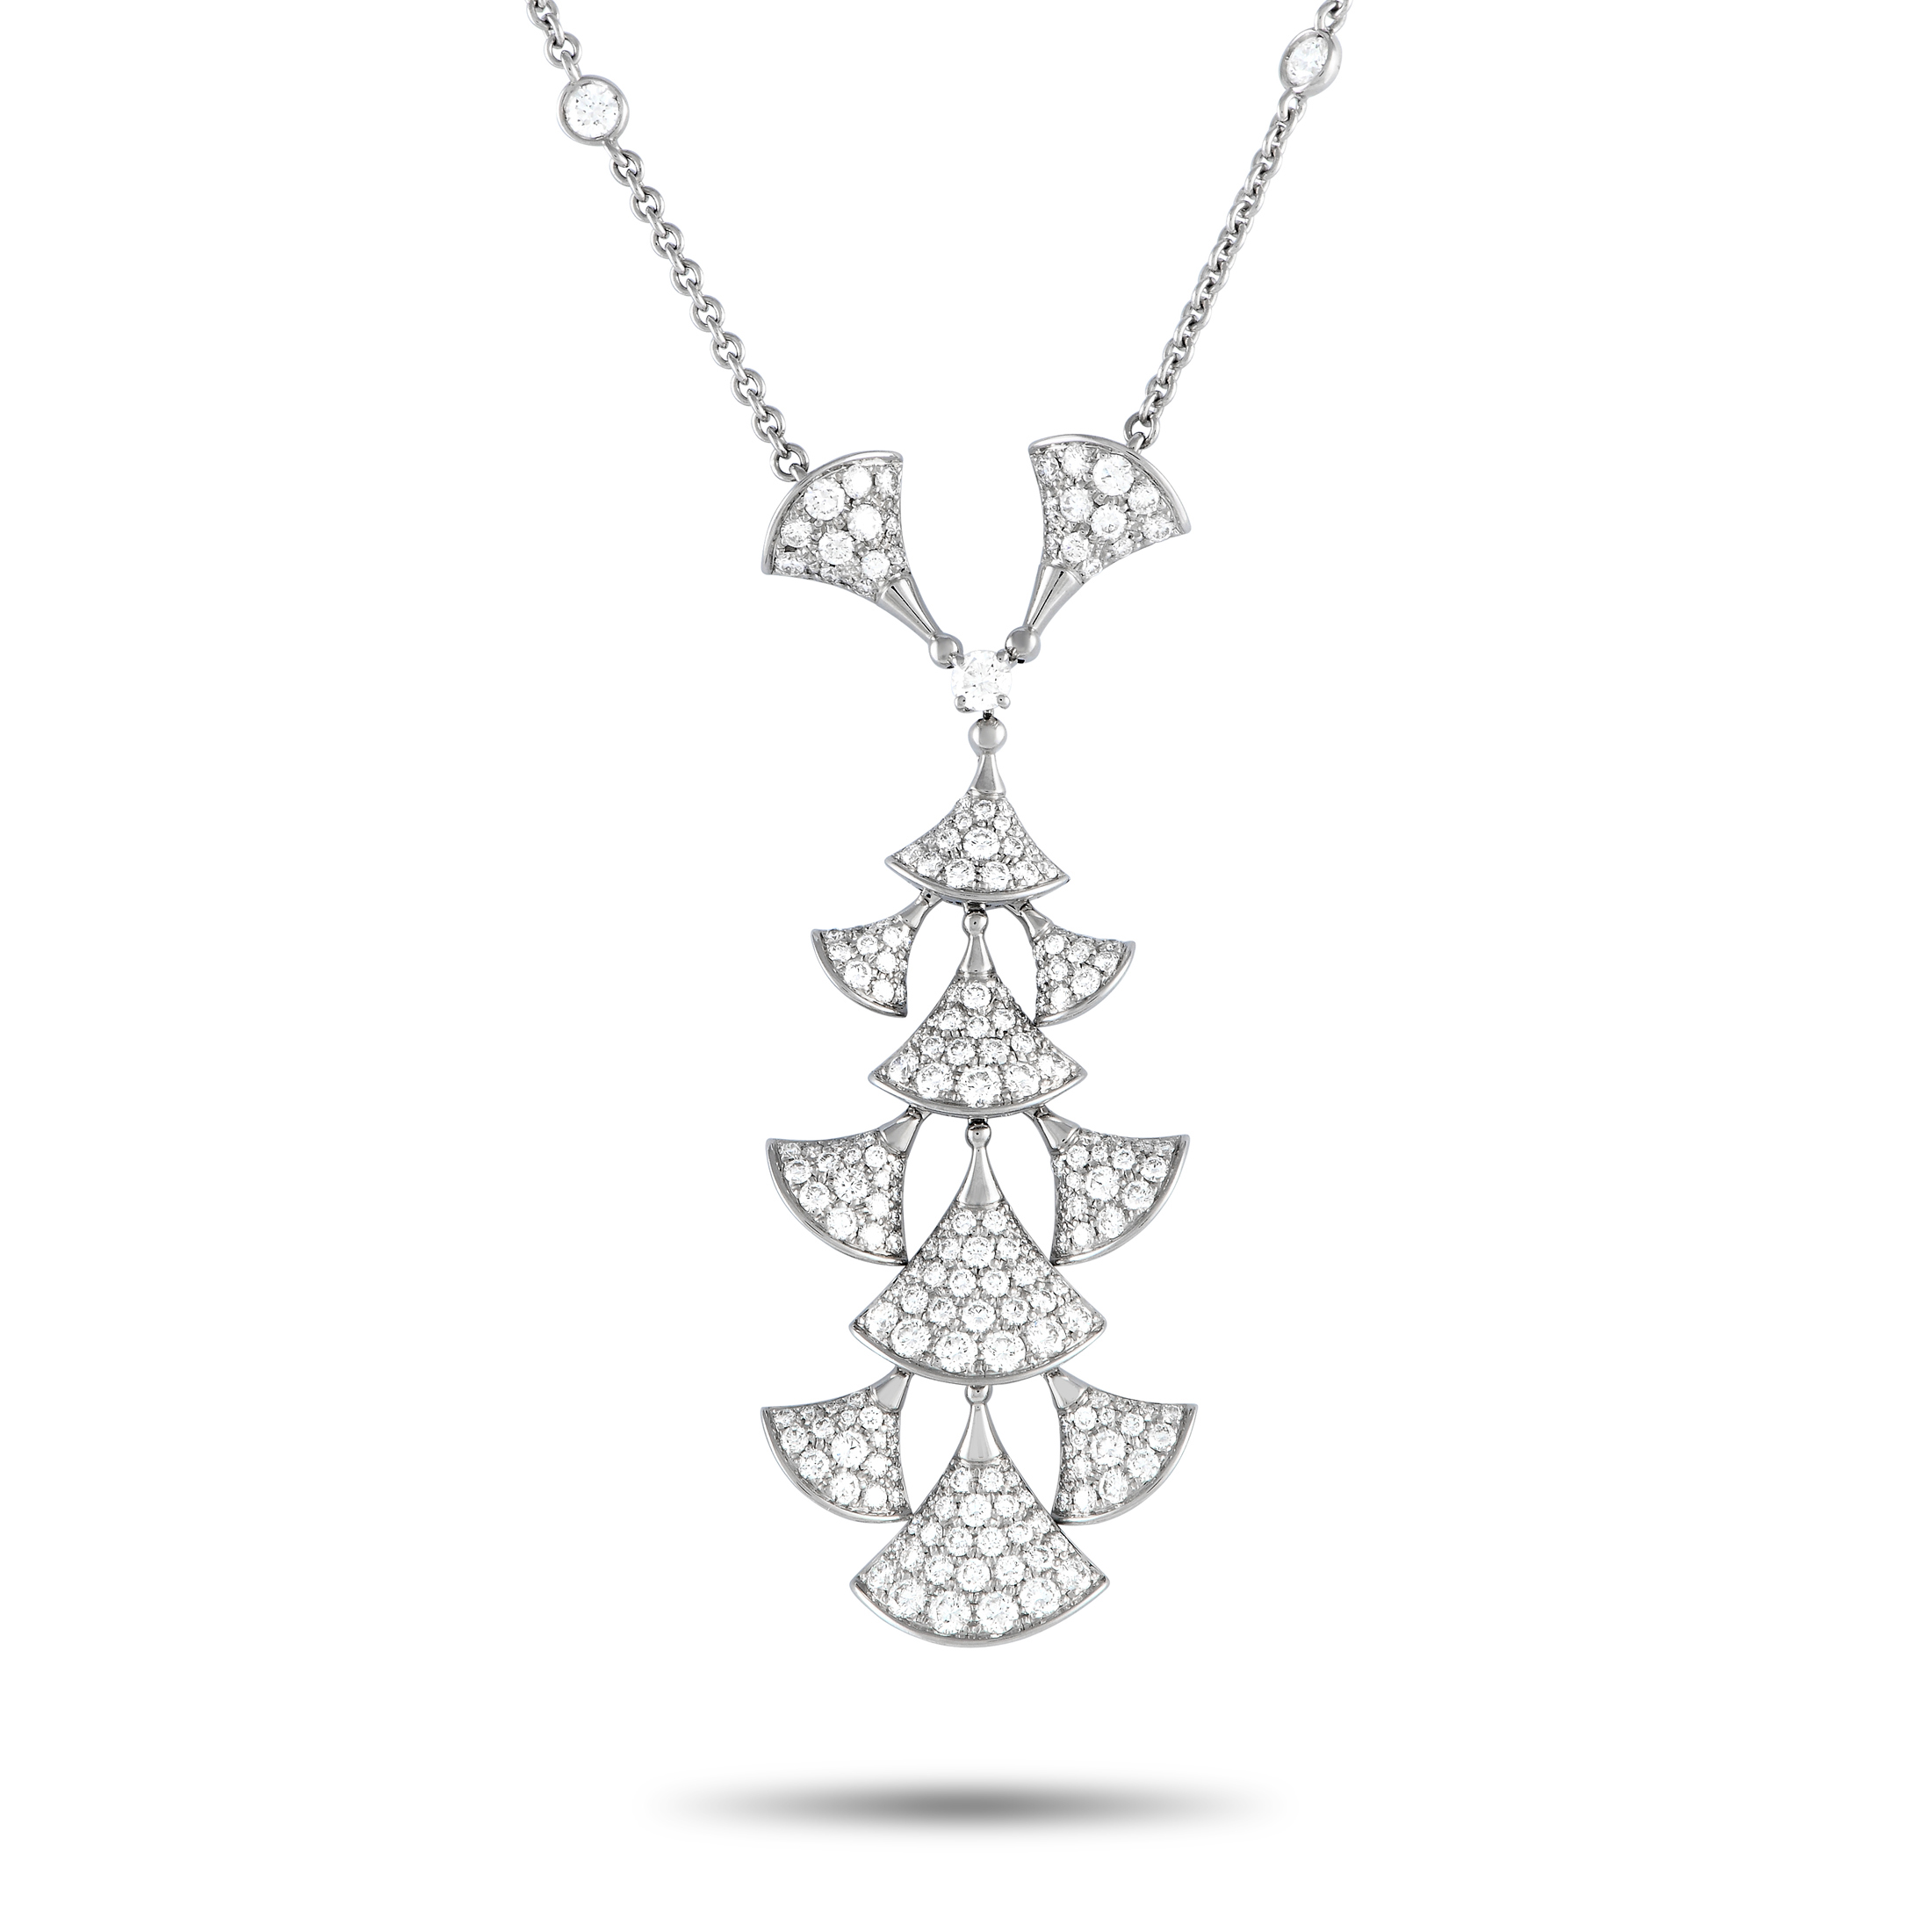 Bvlgari Divas Dream Diamond Rose Gold Necklace